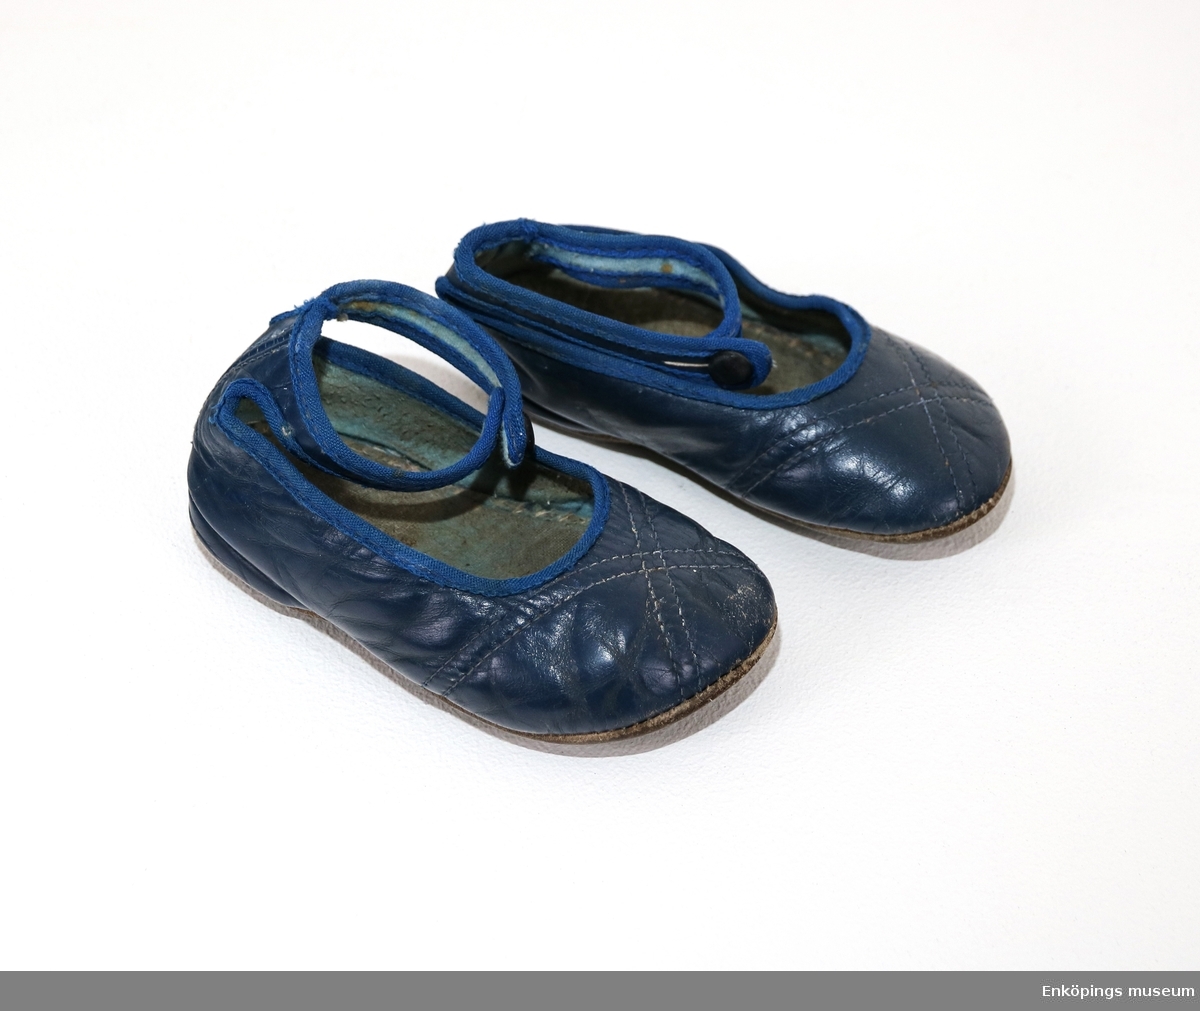 Blå barnsko med slejf, sandalmodell. Skorna är från 1950-talet.